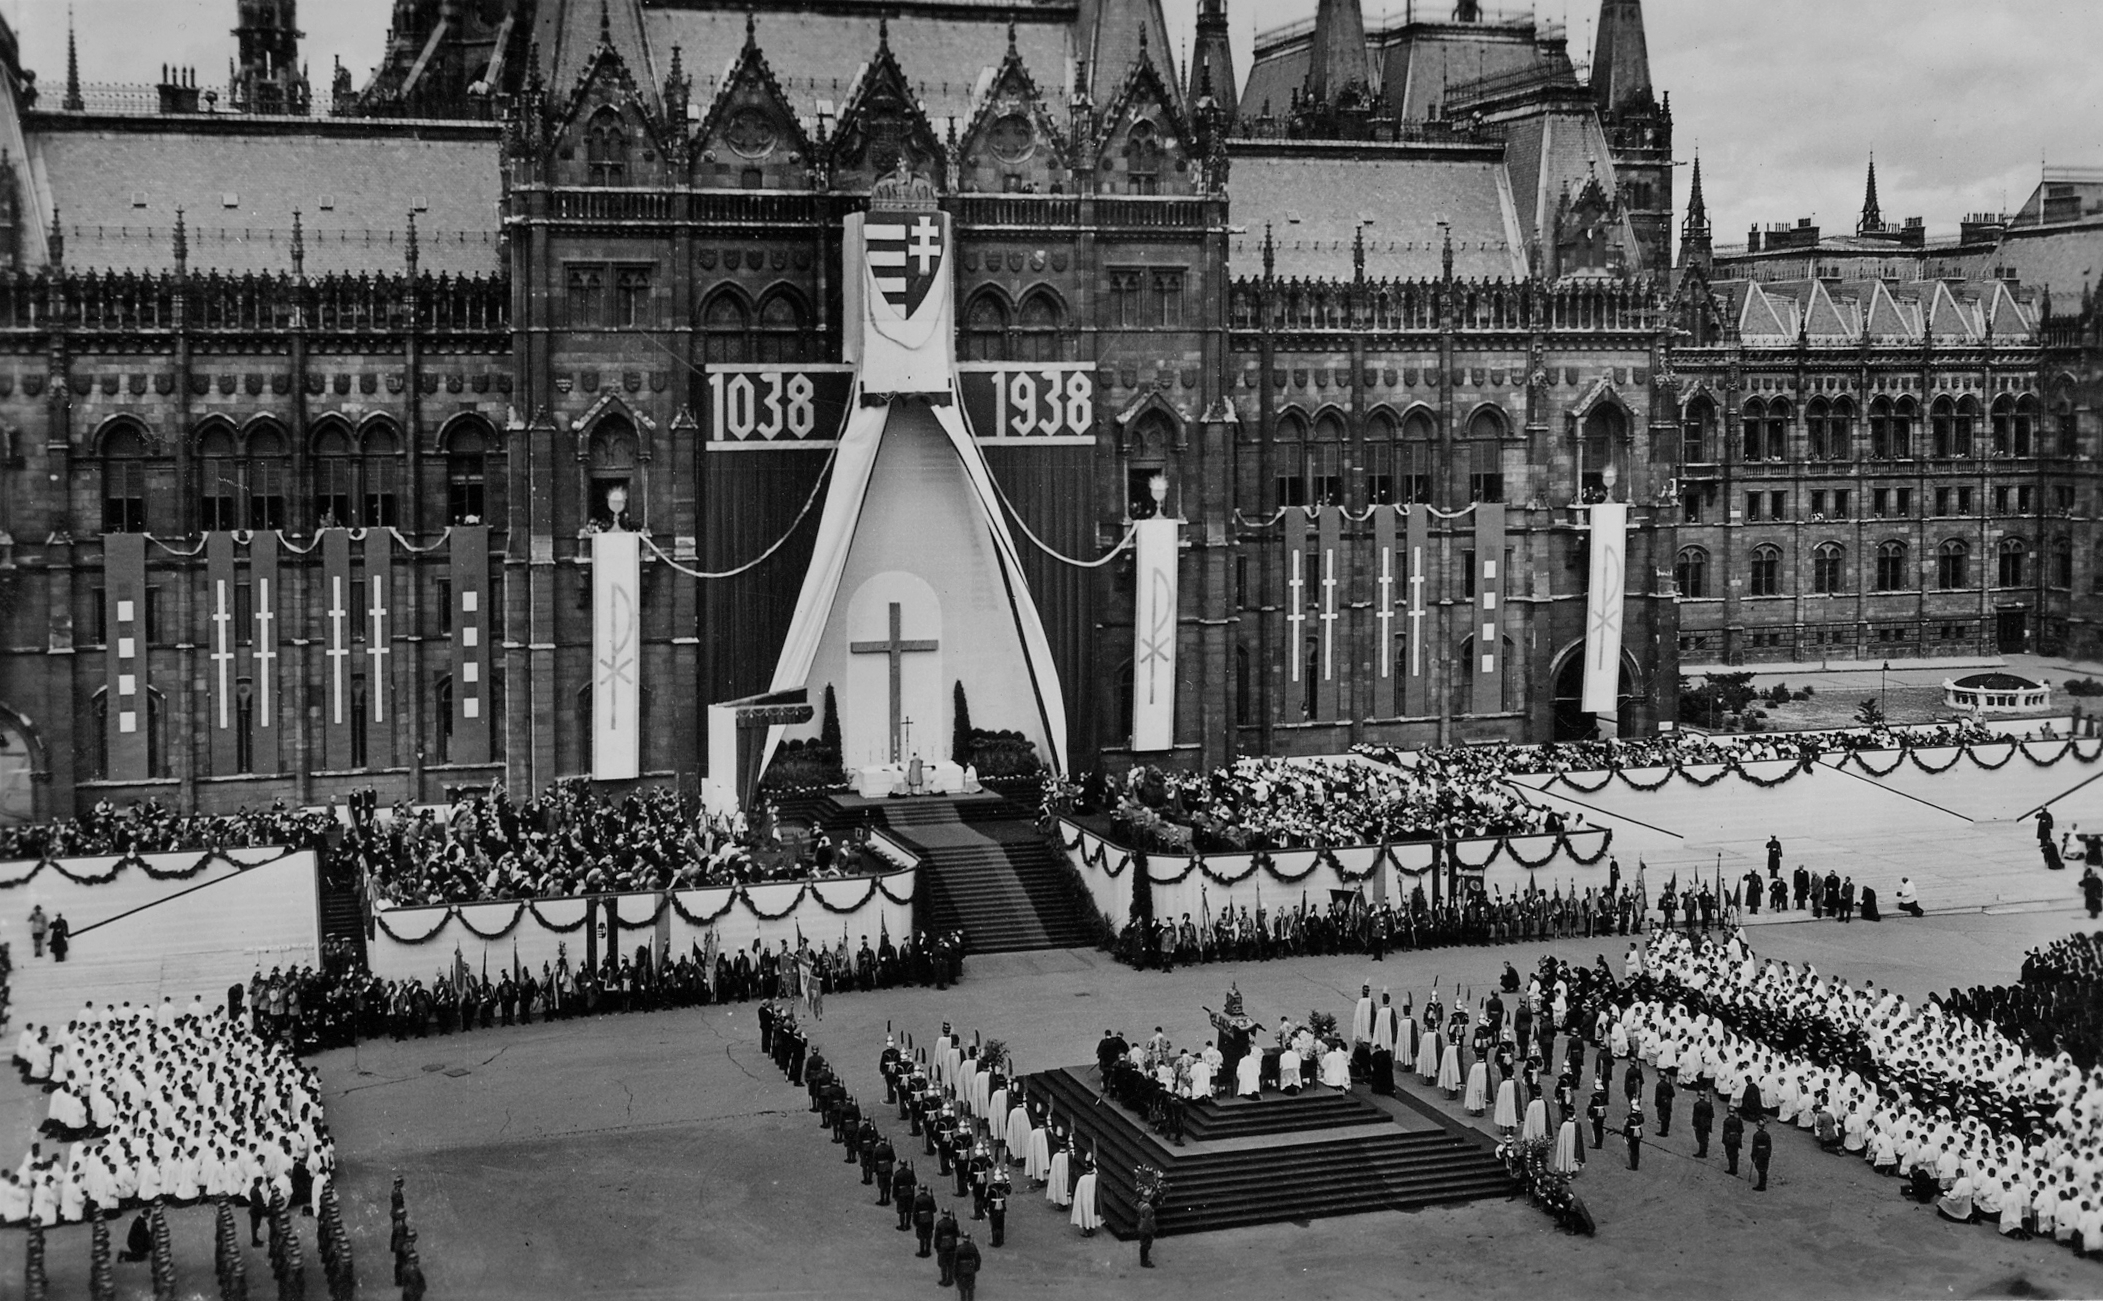 Kossuth Lajos tér, a Szent István emlékév megnyitó ünnepsége a Parlament előtt, 1938. május 30-án